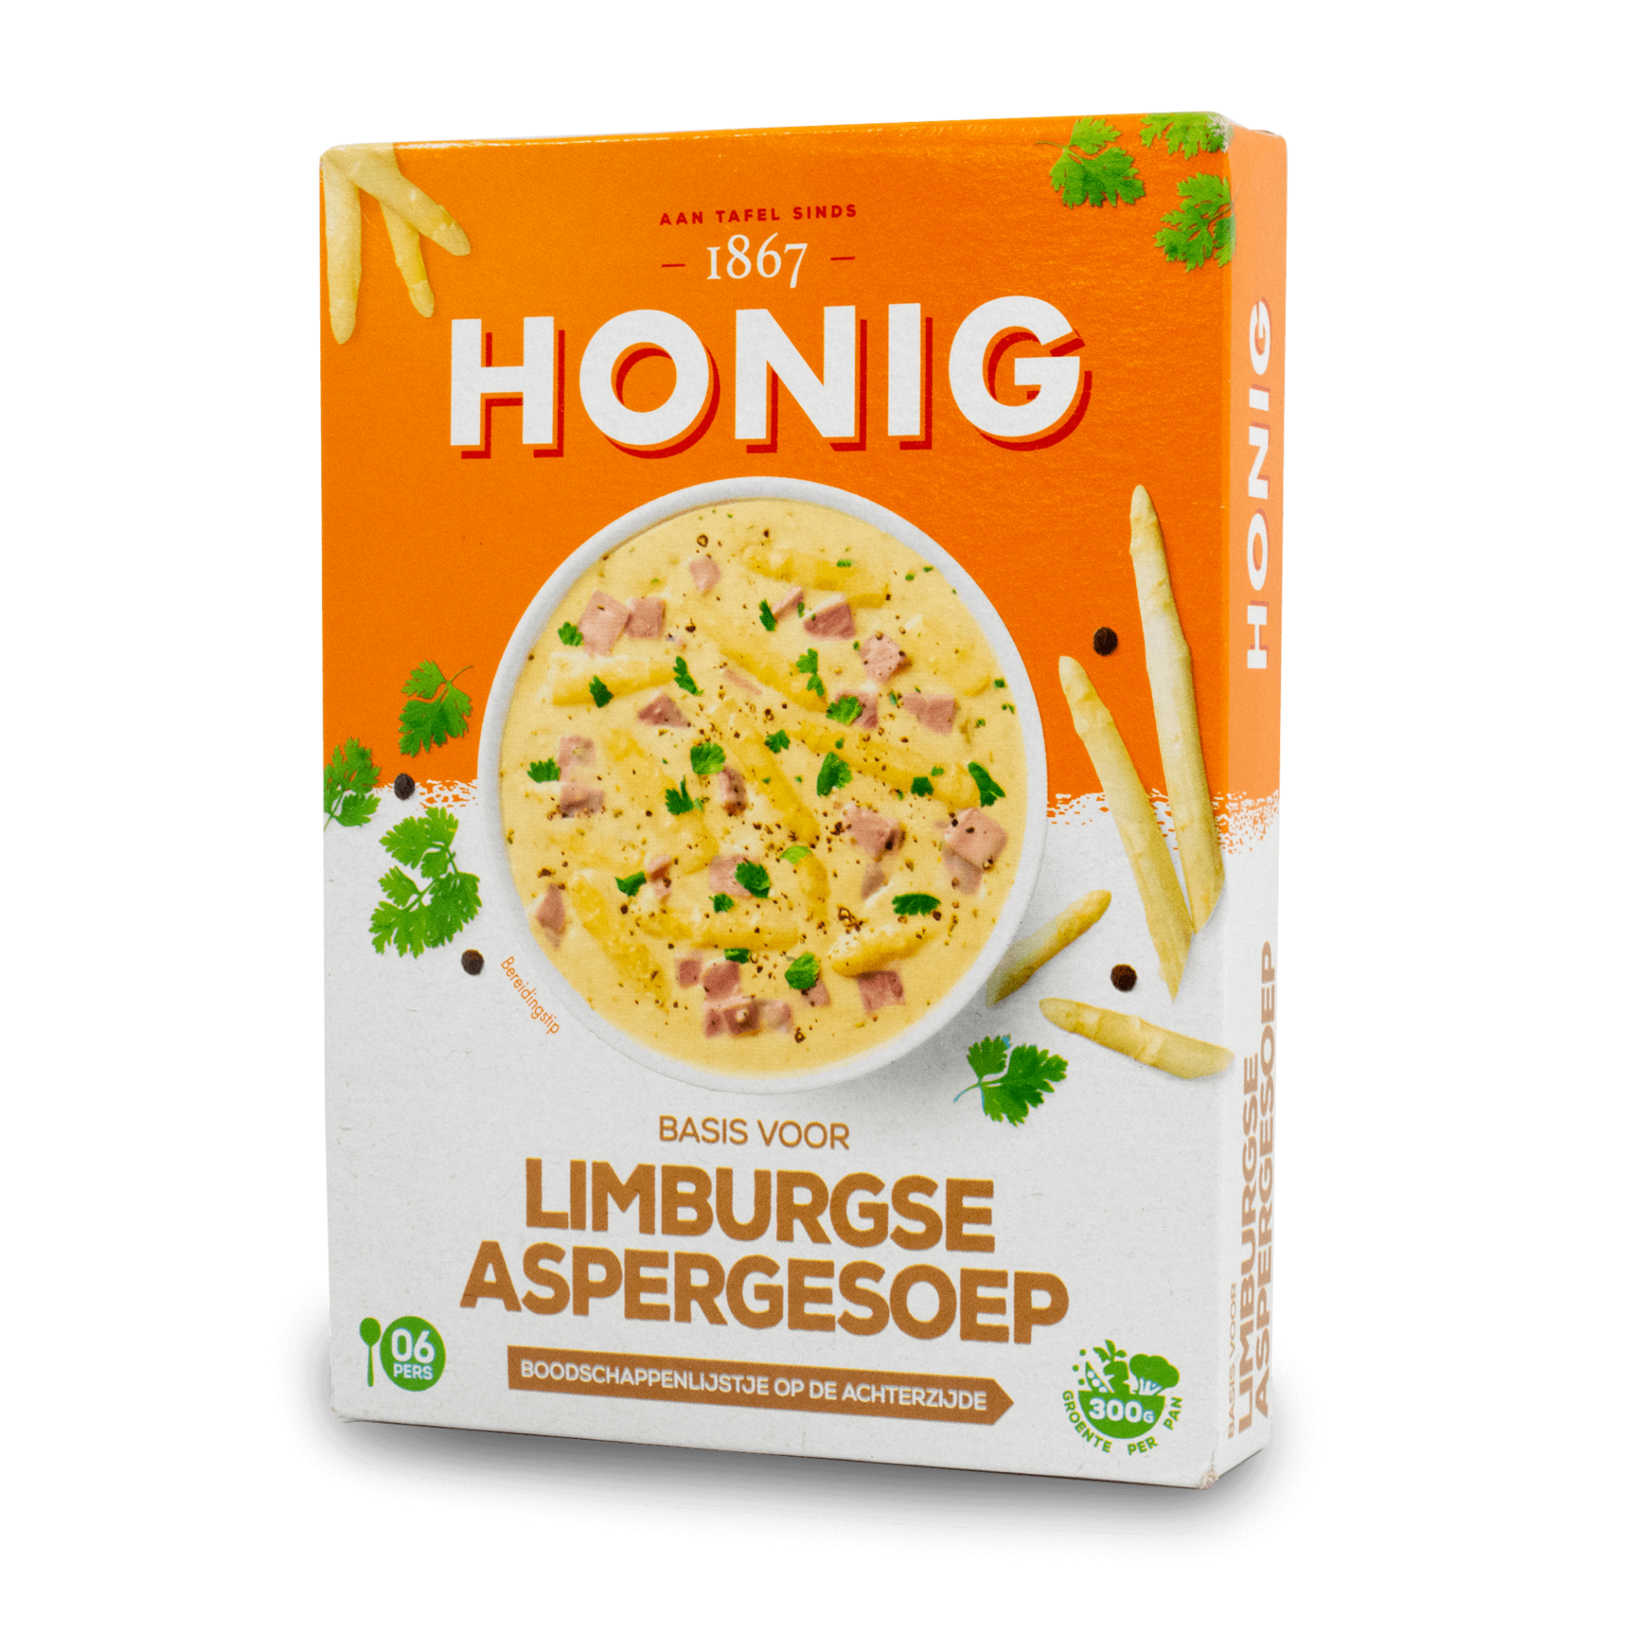 Honig Honig Soup Mix - Cream of Asparagus